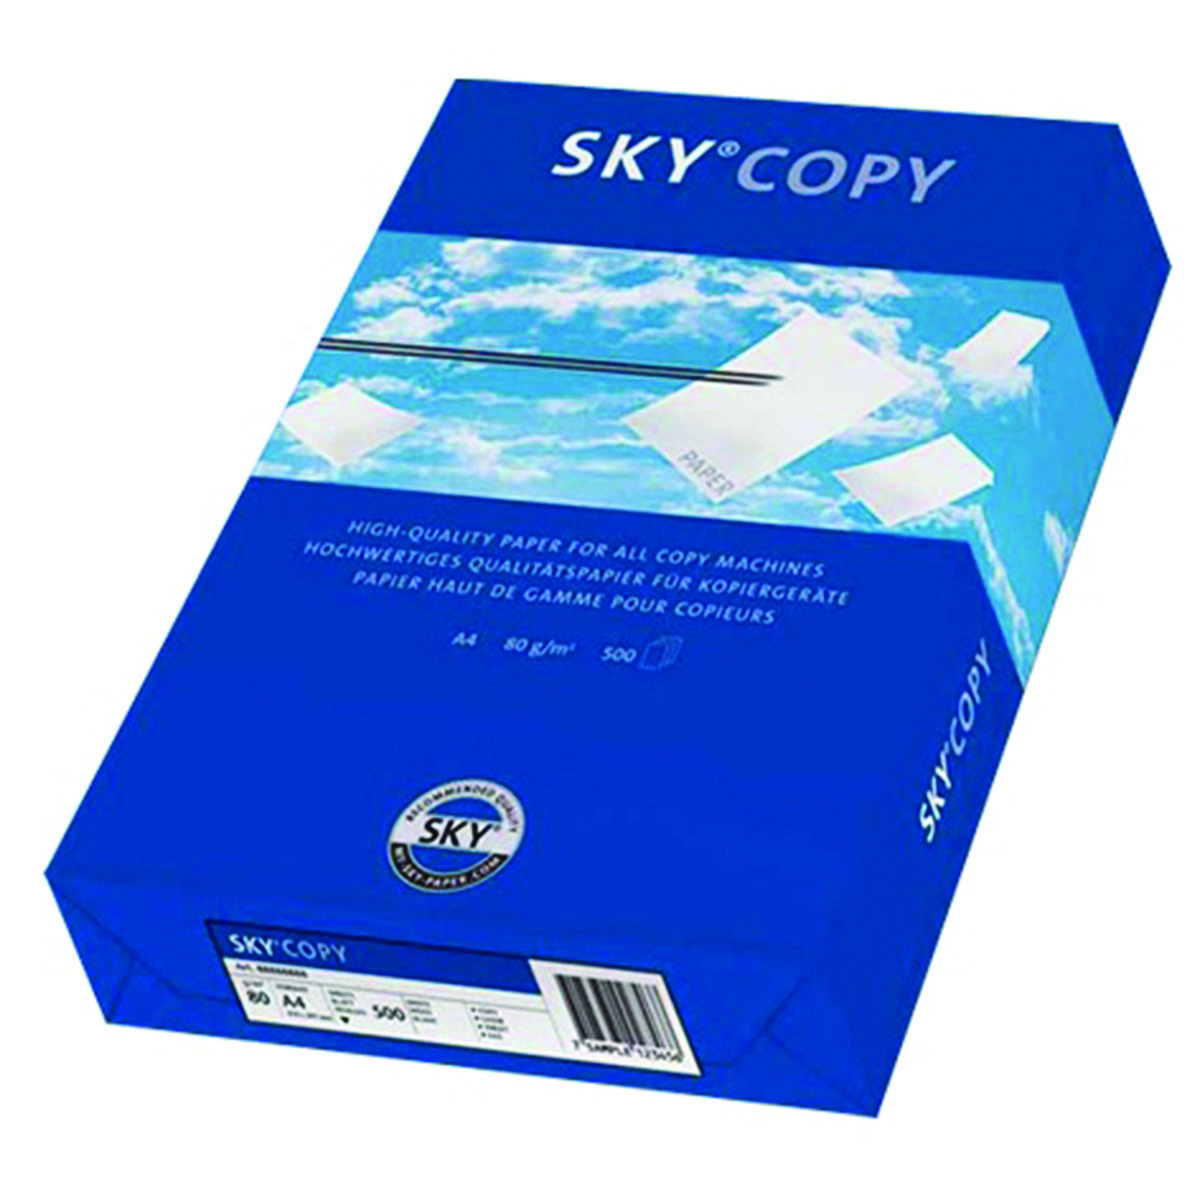 SKY Papier kserograficzny SKY Copy, A4, klasa C, 80gsm, 500ark. SKY-88031879